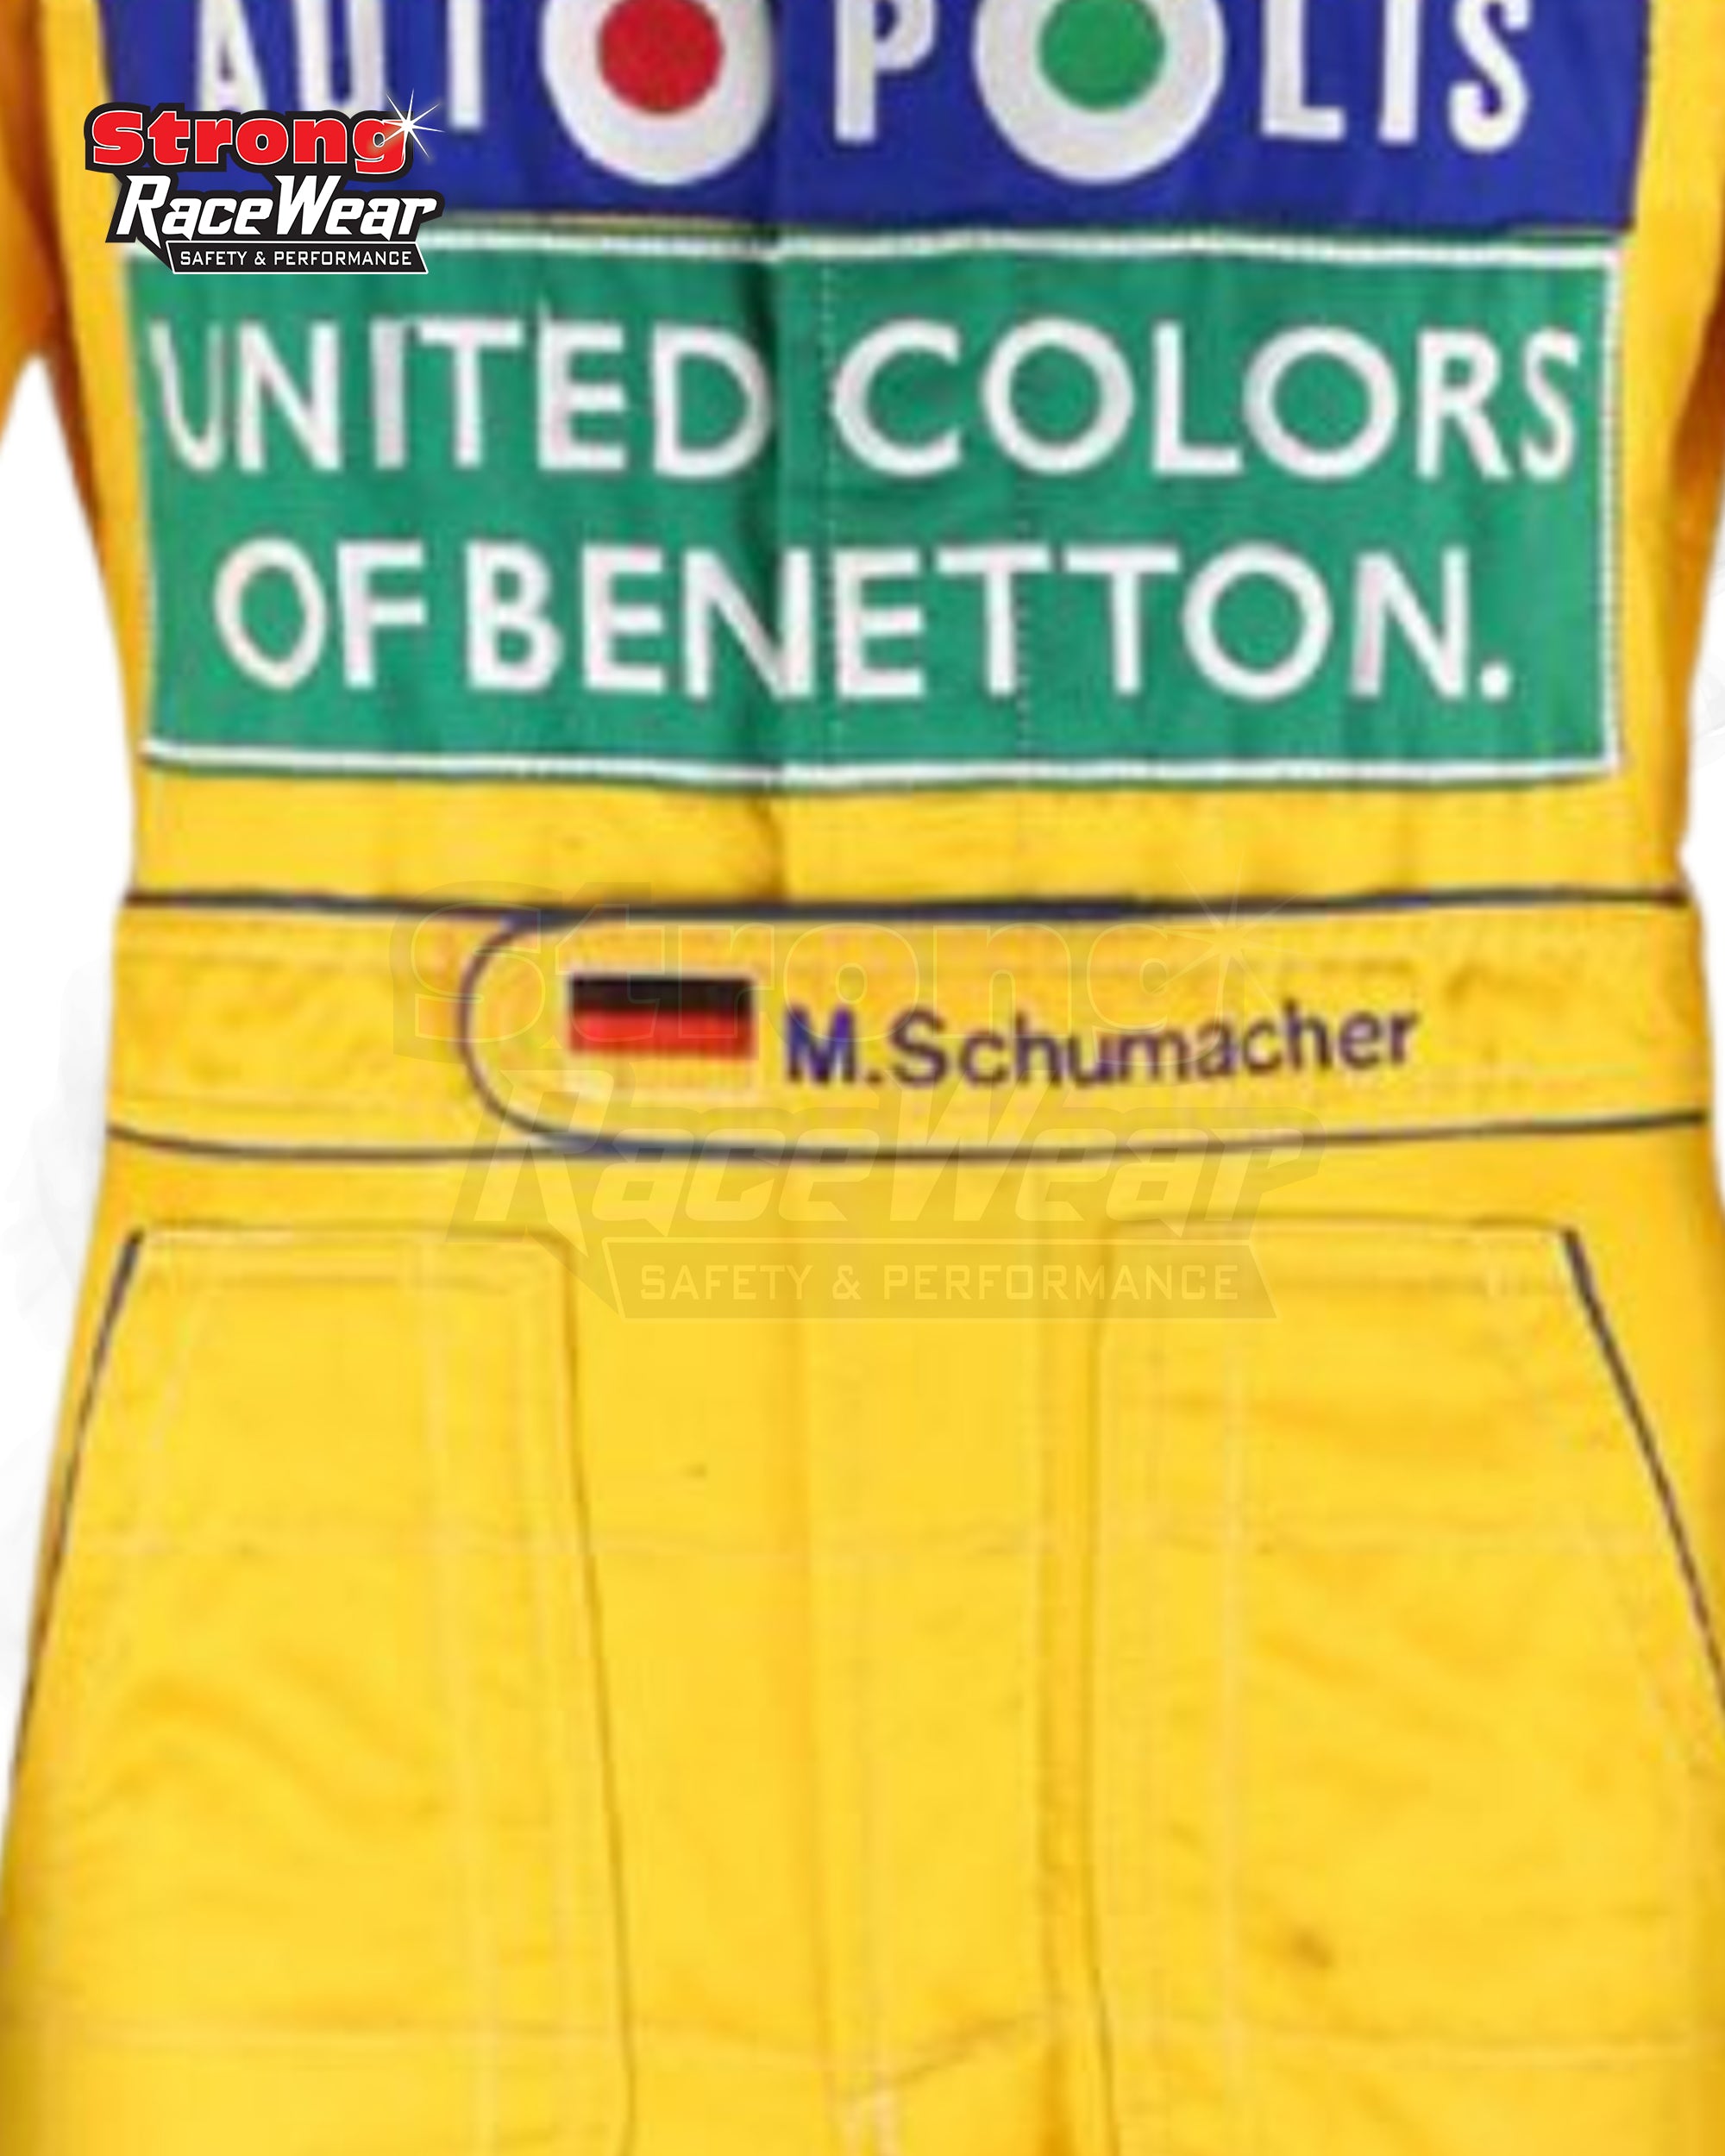 1992 Michael Schumacher German GP Benetton F1 Racing Suit